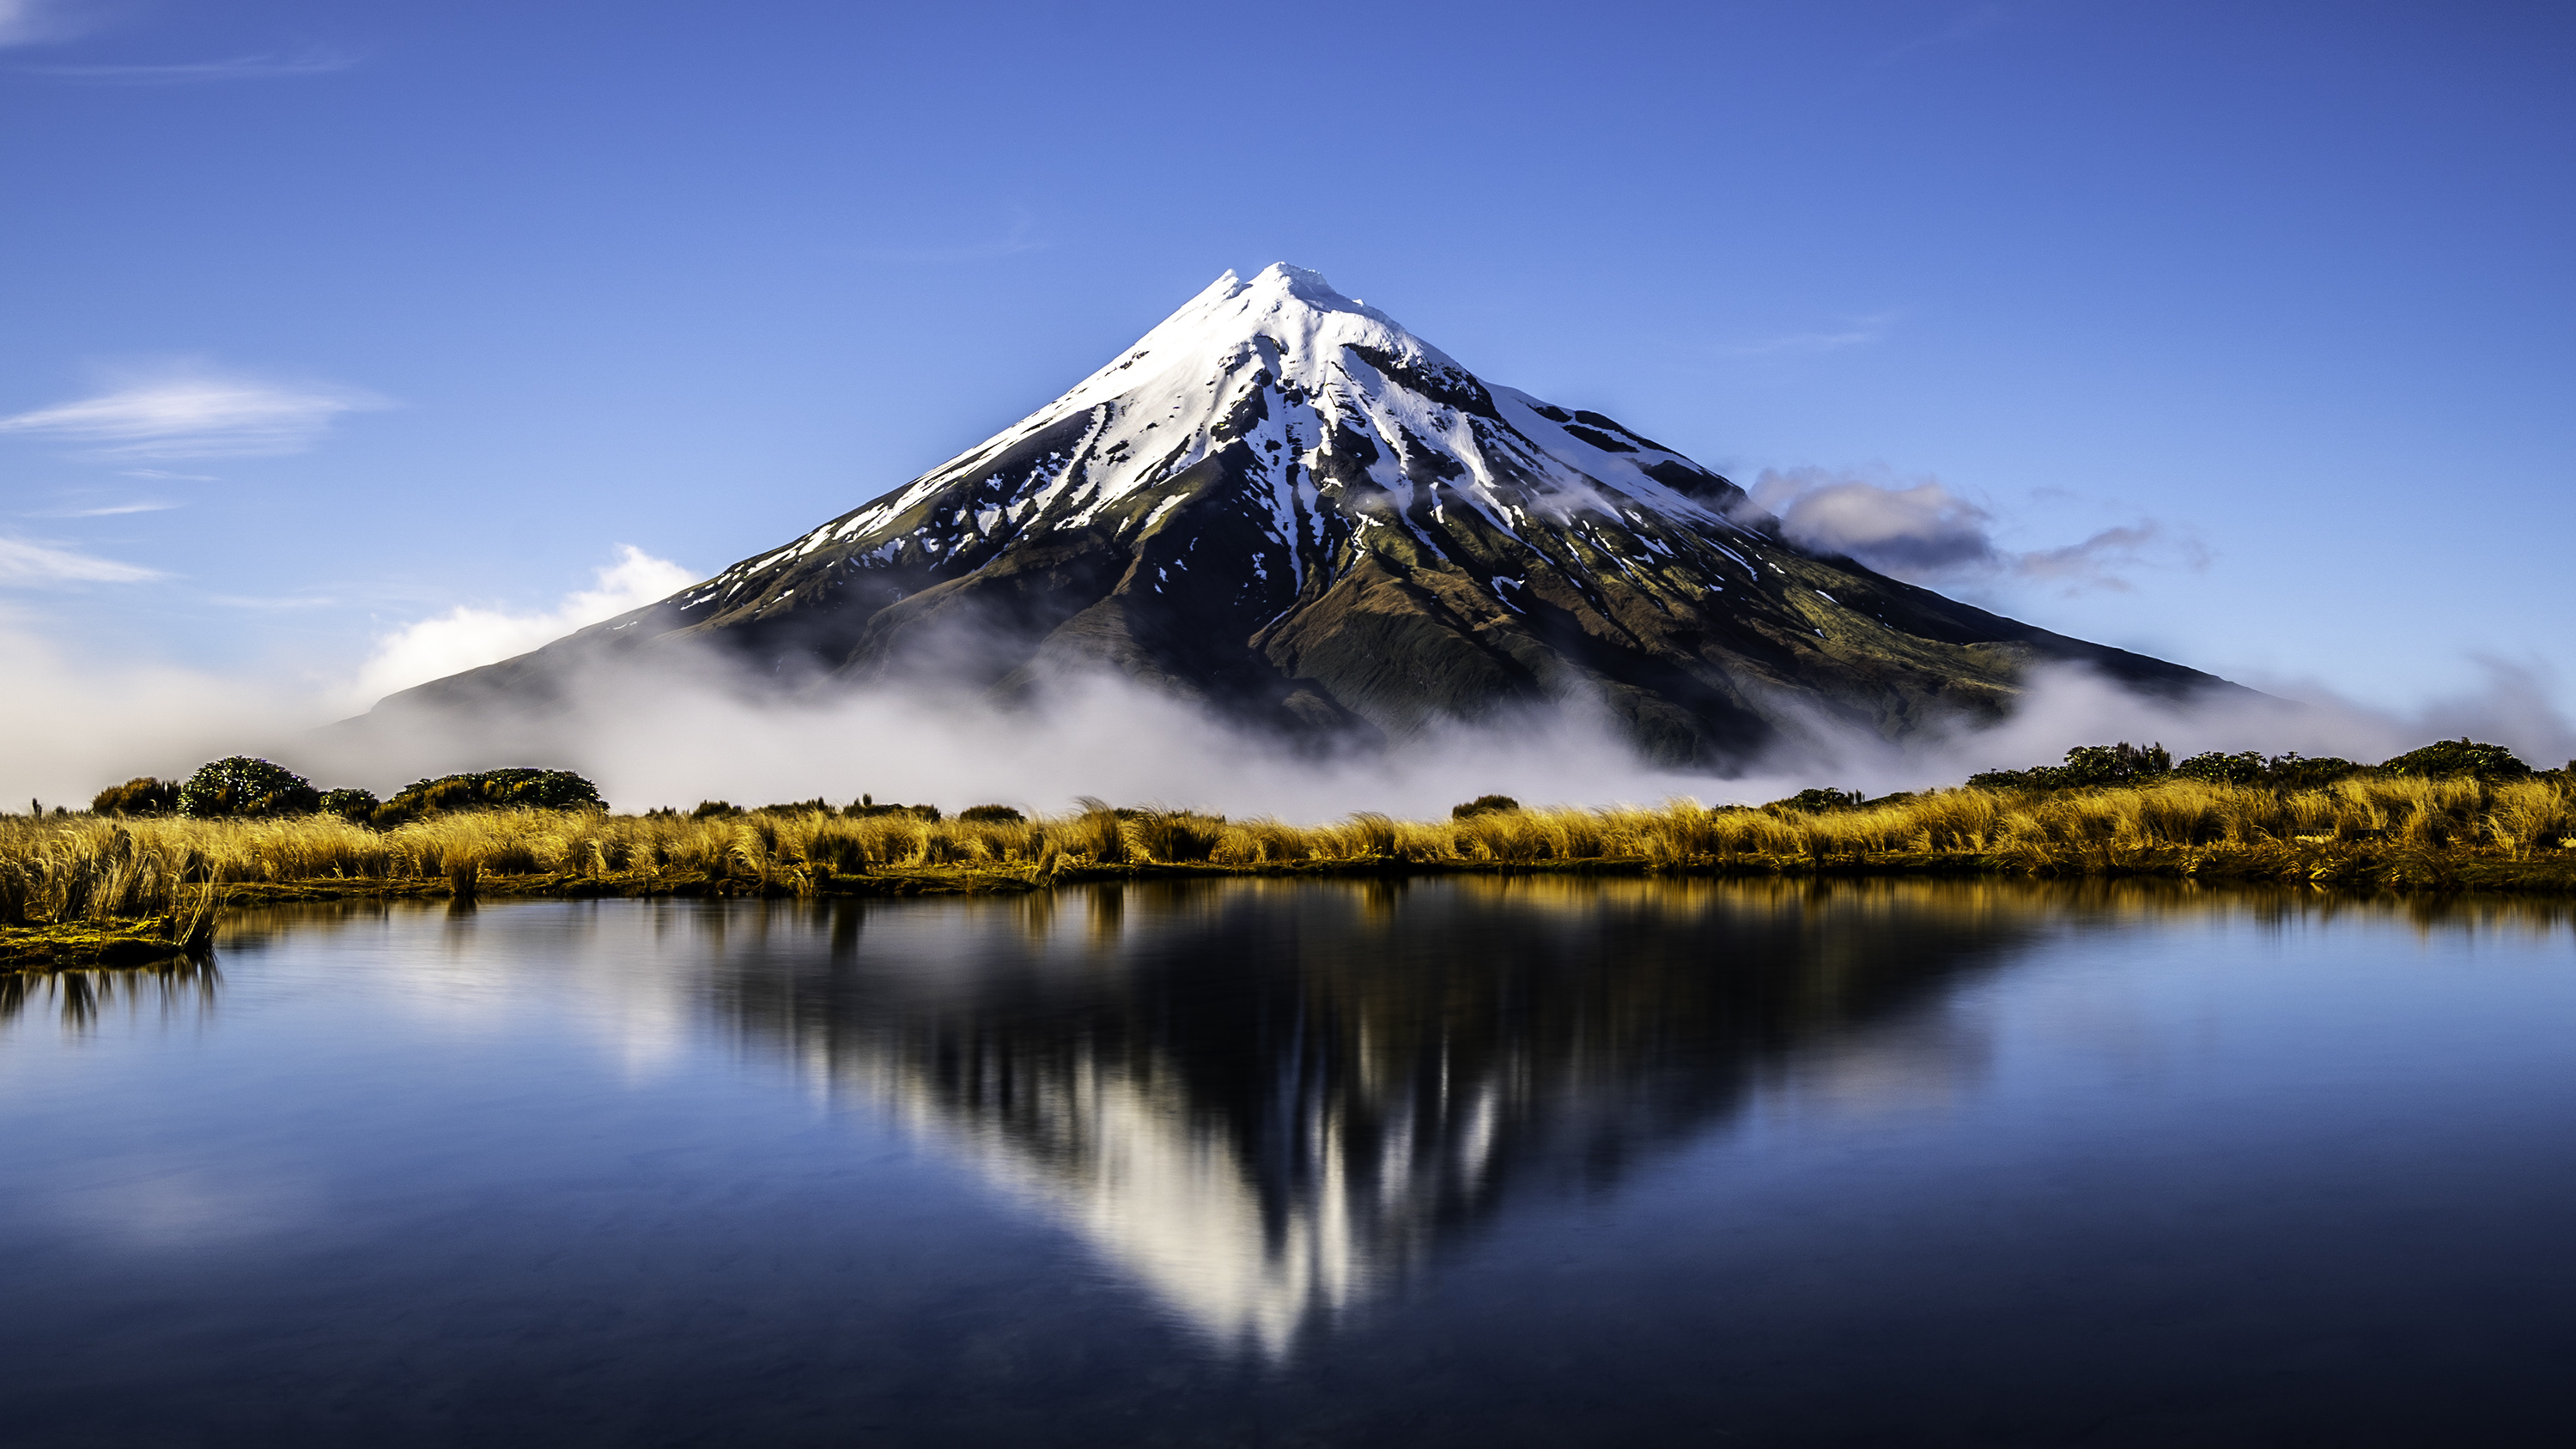 autorisation de voyage électronique en Nouvelle-Zélande, obligatoire dès octobre 2019